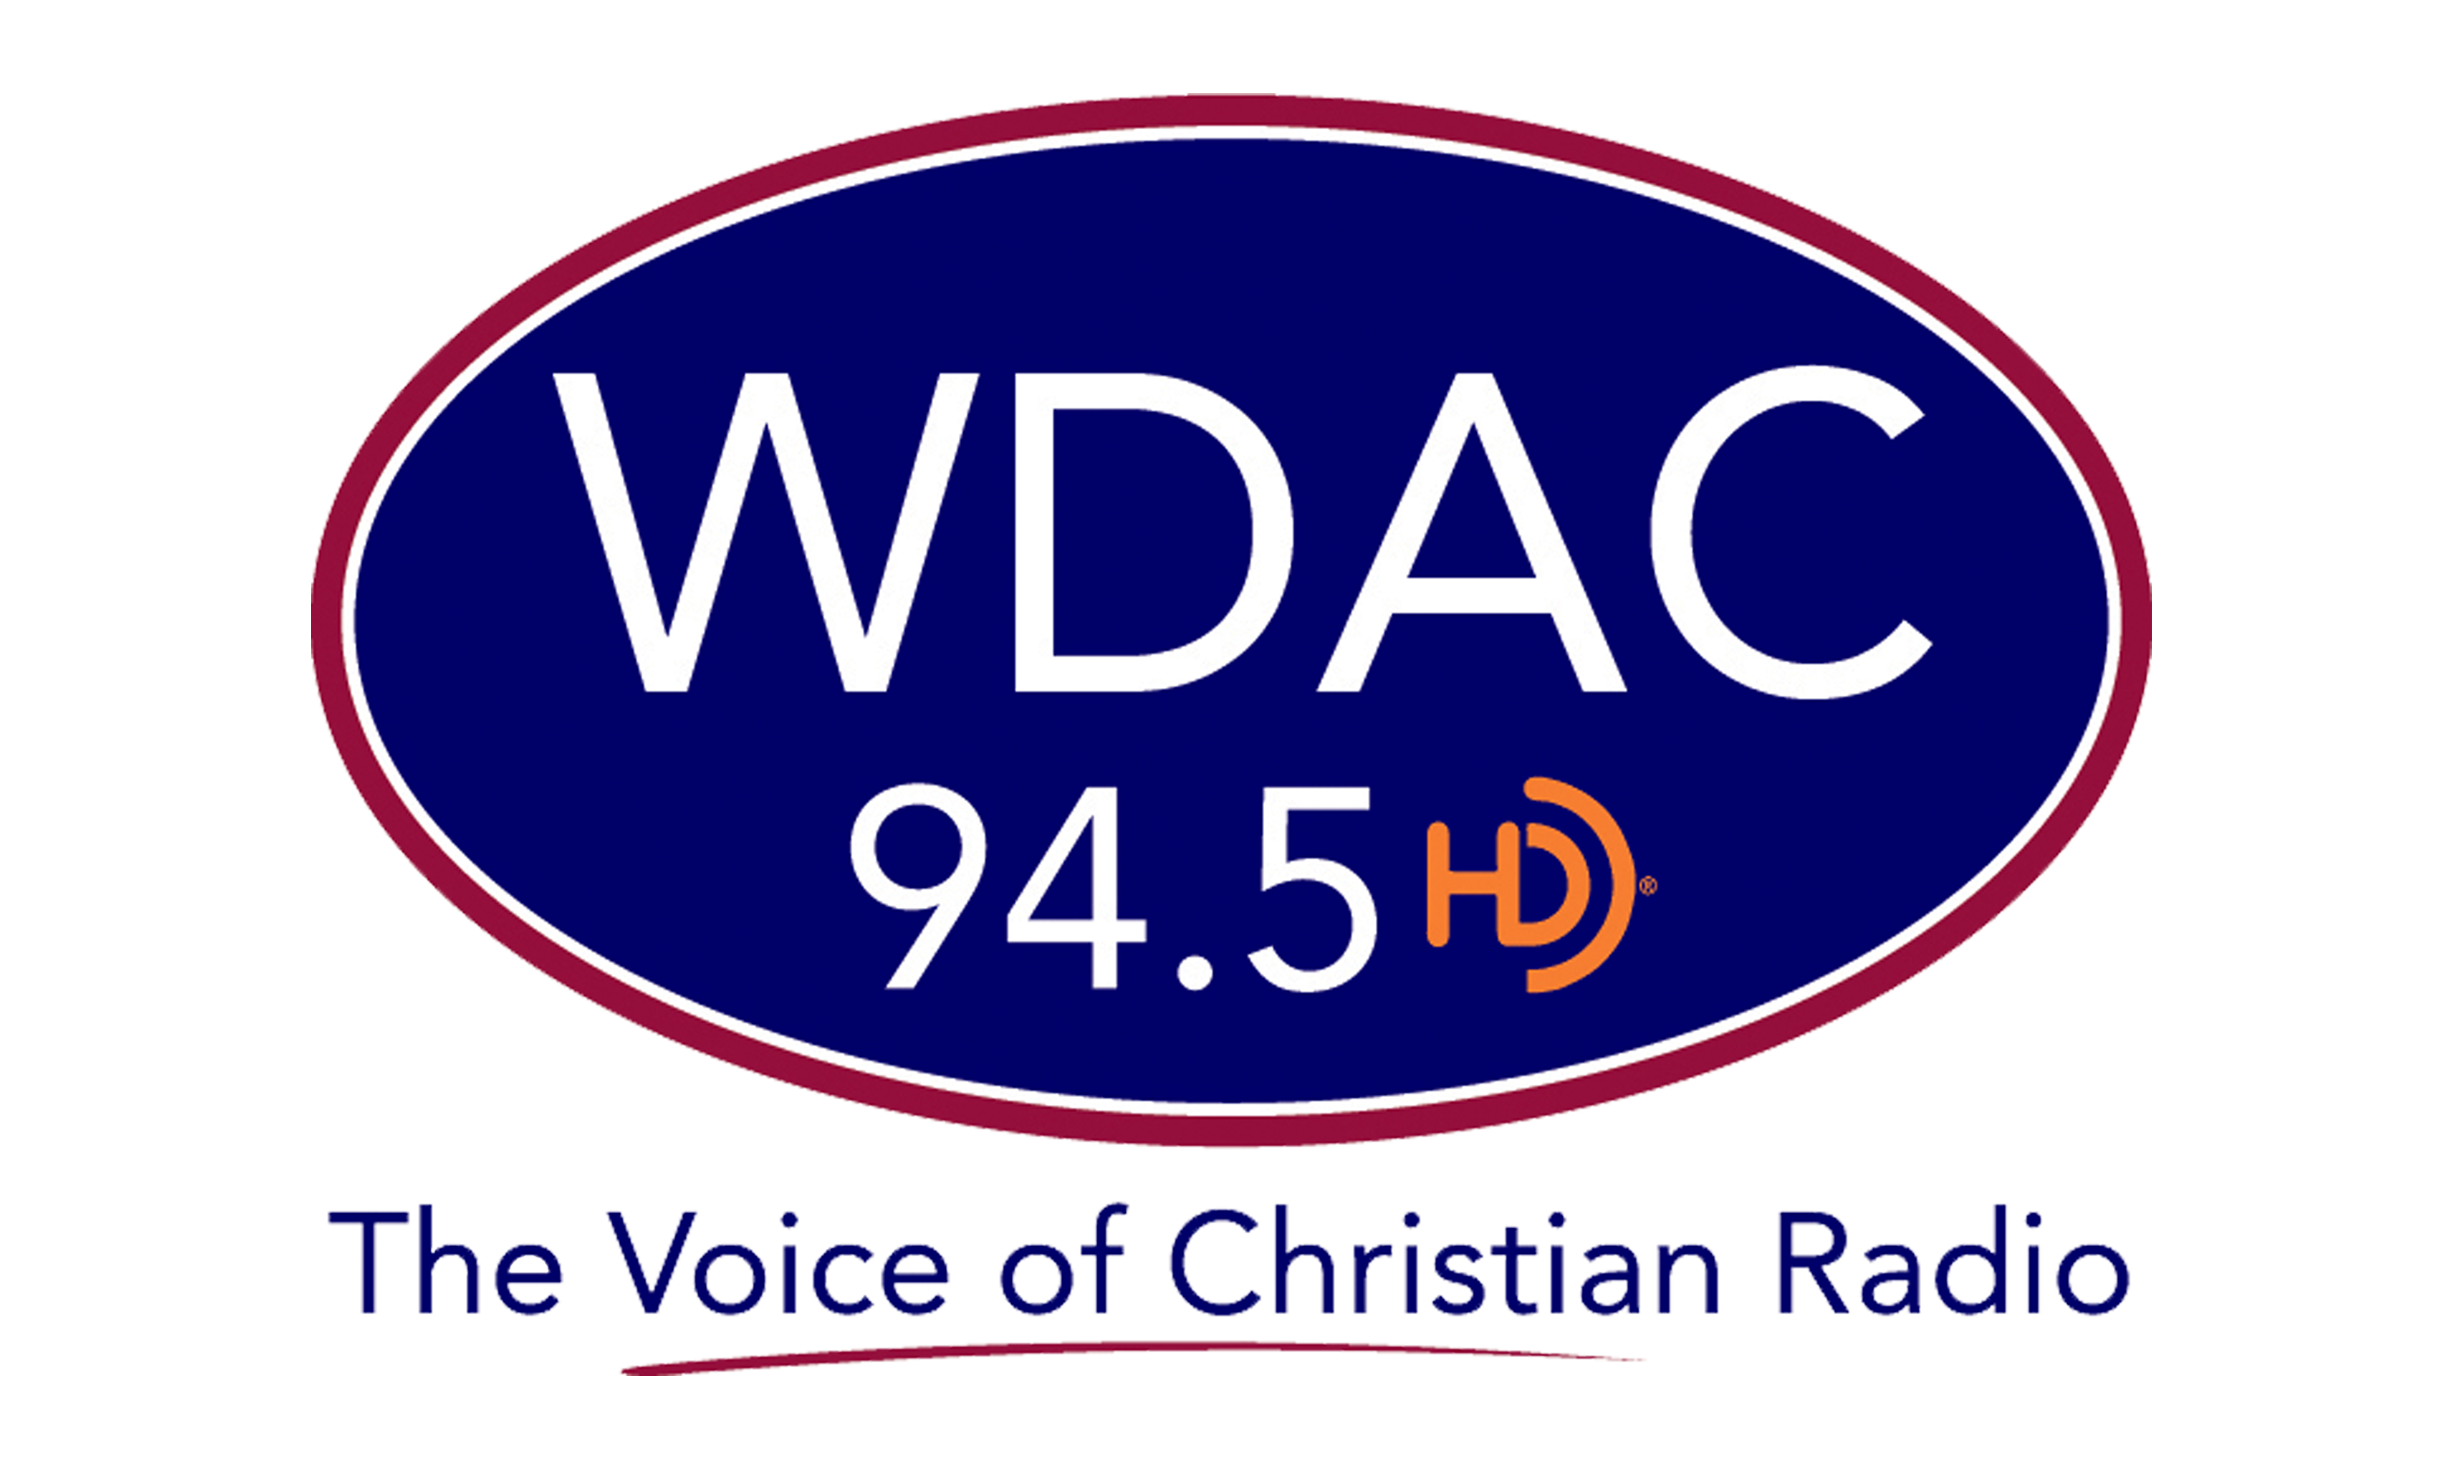 WDAC FM 94.5 HD1